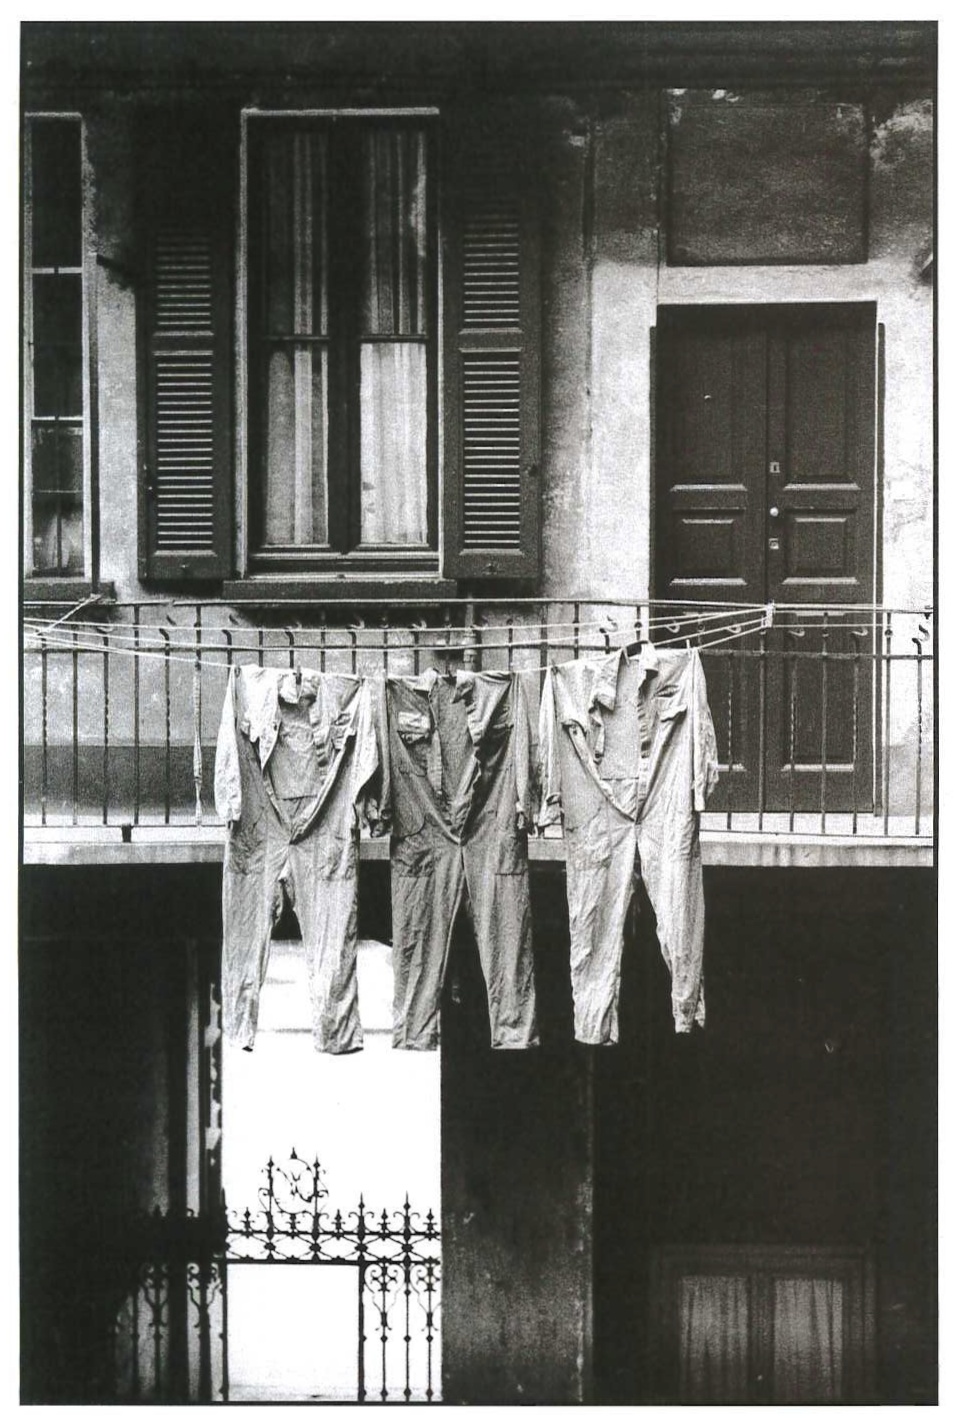   Casa di ringhiera in via Correggio. Milano, 1970.  